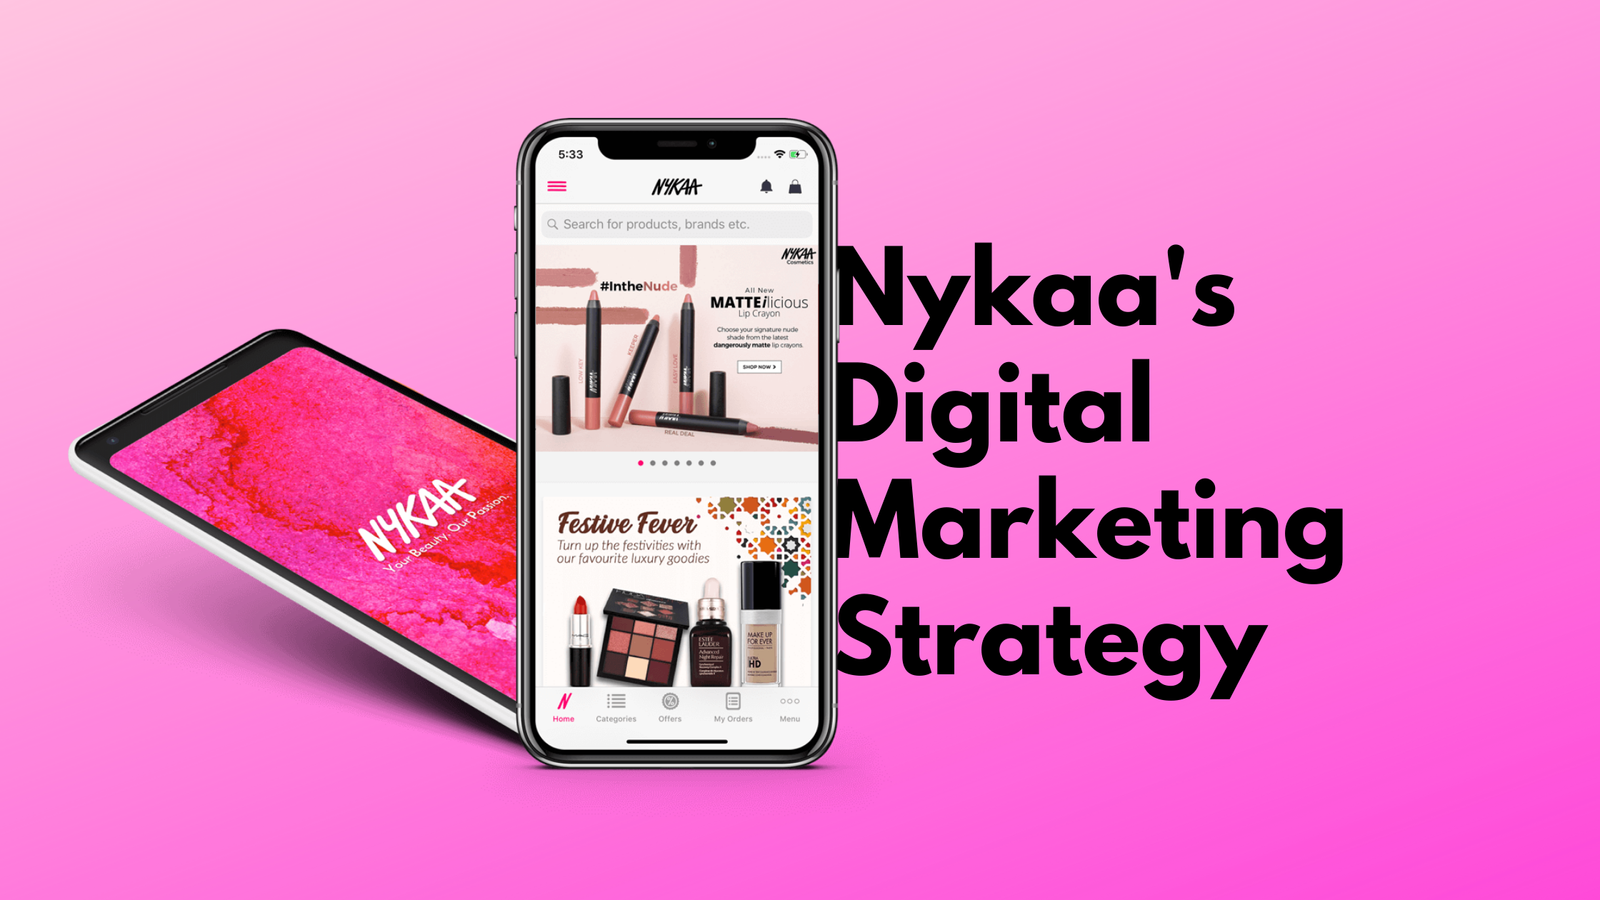 Nykaa's Digital Marketing Strategy